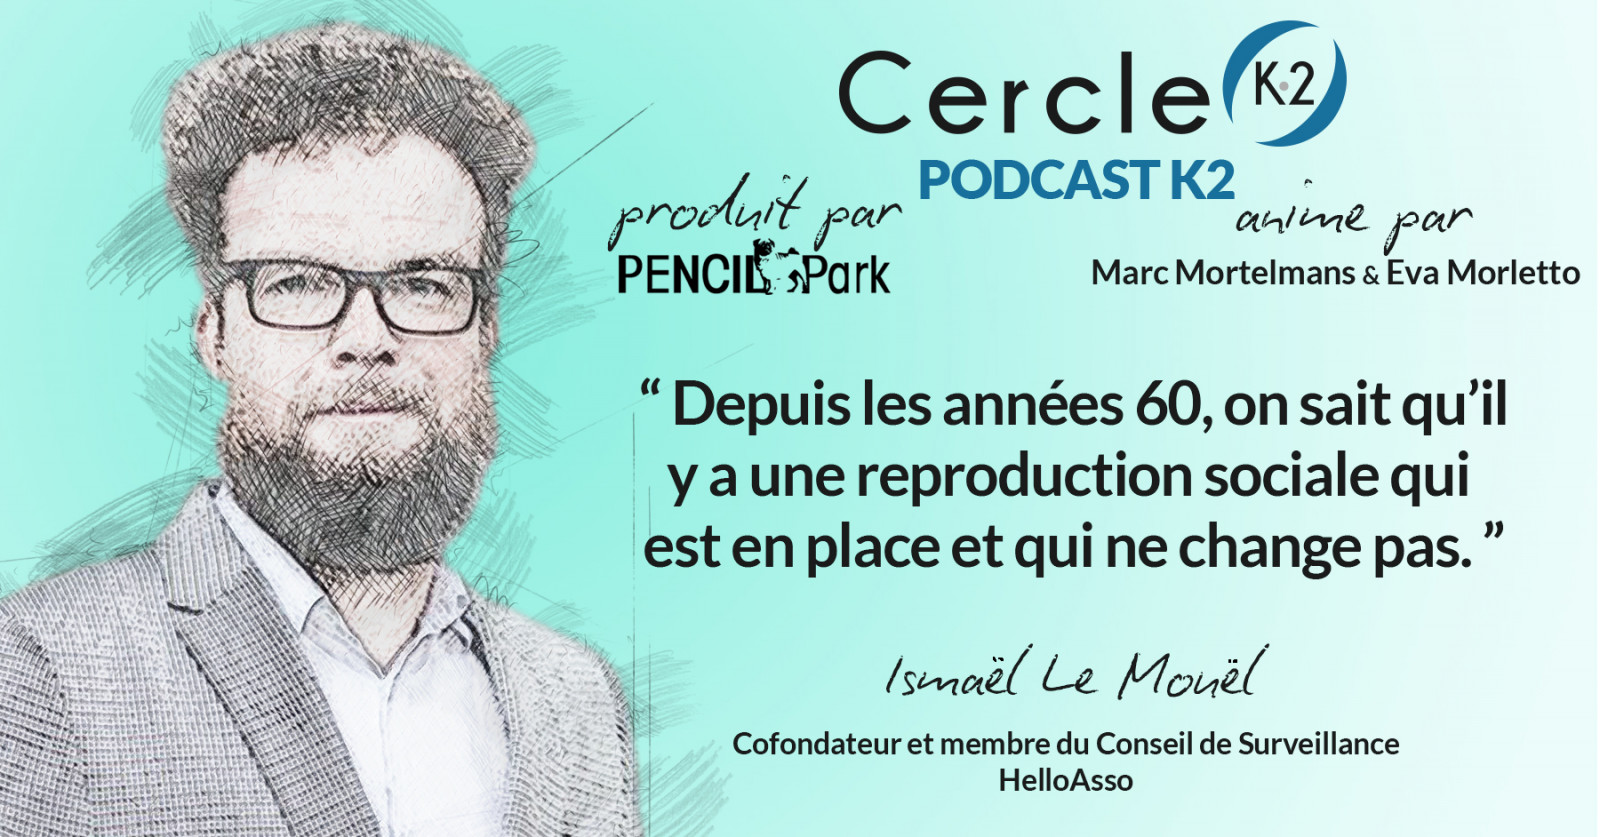 [Podcast K2] Episode 11 - lsmaël Le Mouël 1/2 - Cercle K2